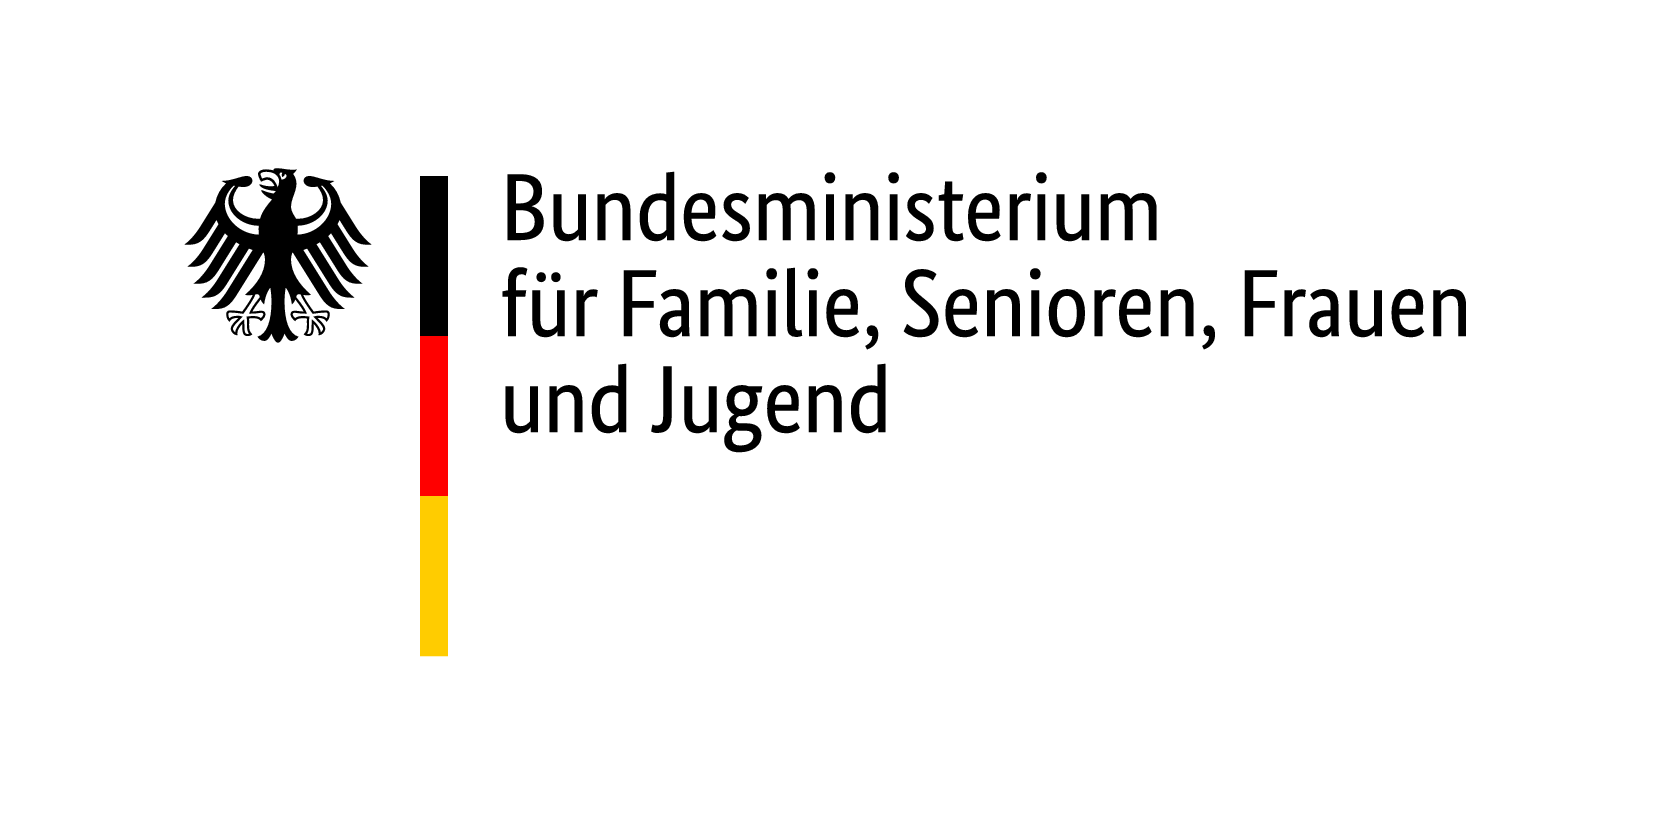 Logo Bundesministerium für Familie, Senioren, Frauen und Jugend, schwarzer Bundesadler, schmale Deutschlandflagge